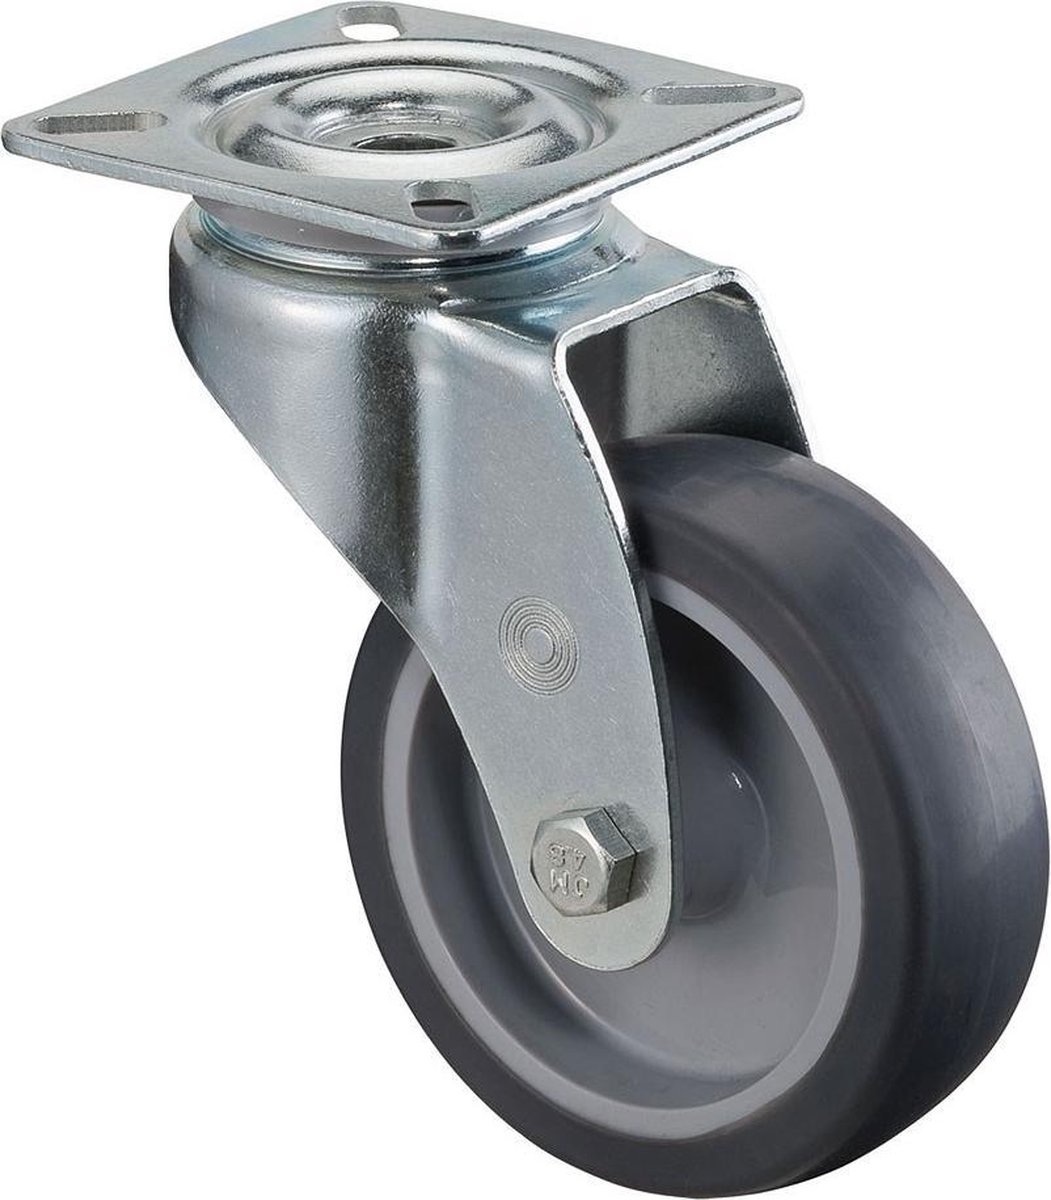 H&S Roulettes de frein pivotantes en caoutchouc robuste 50 mm 